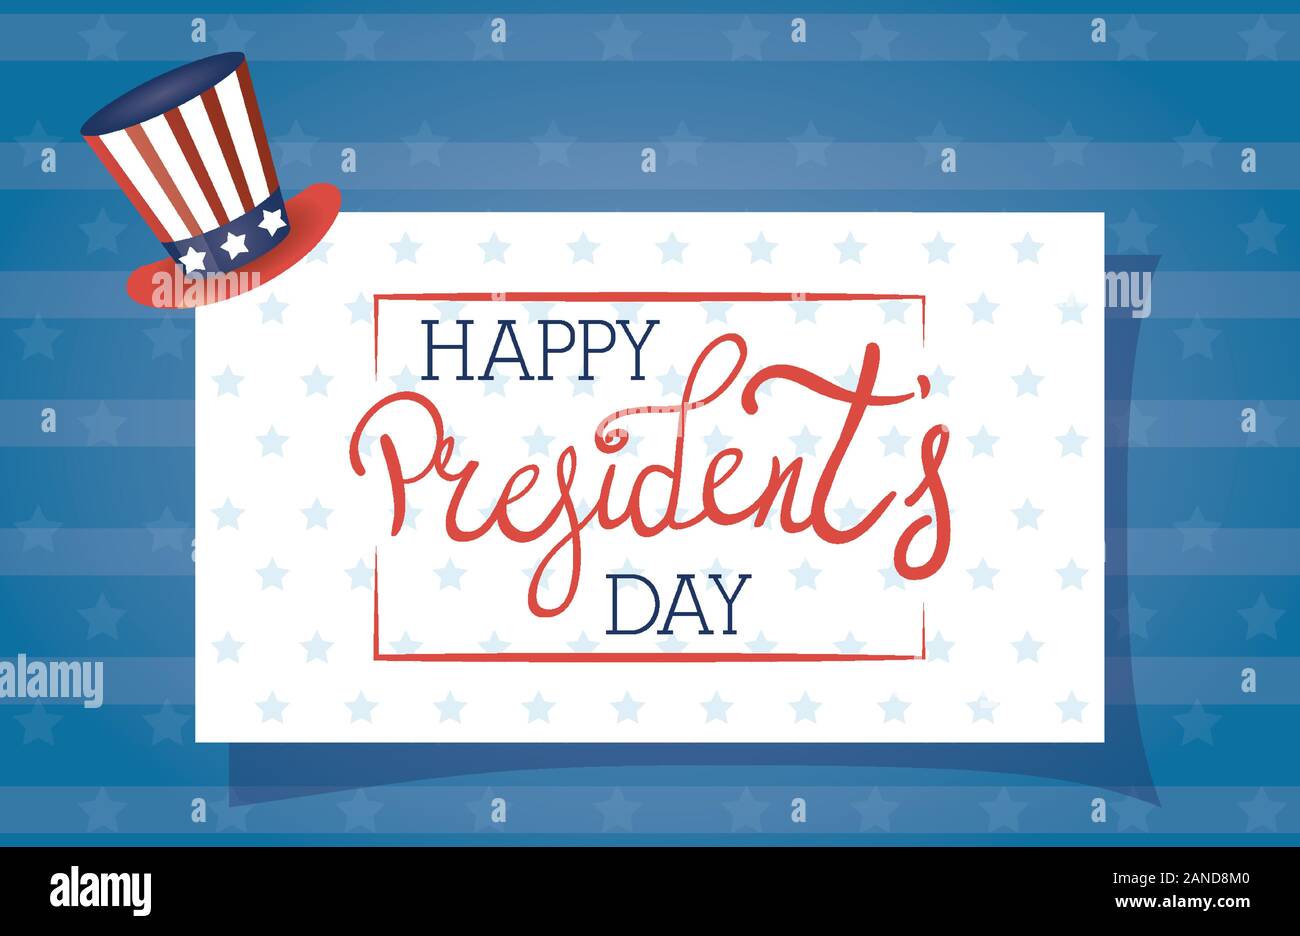 Felice presidenti day poster con tophat e bandiera degli Stati Uniti Illustrazione Vettoriale